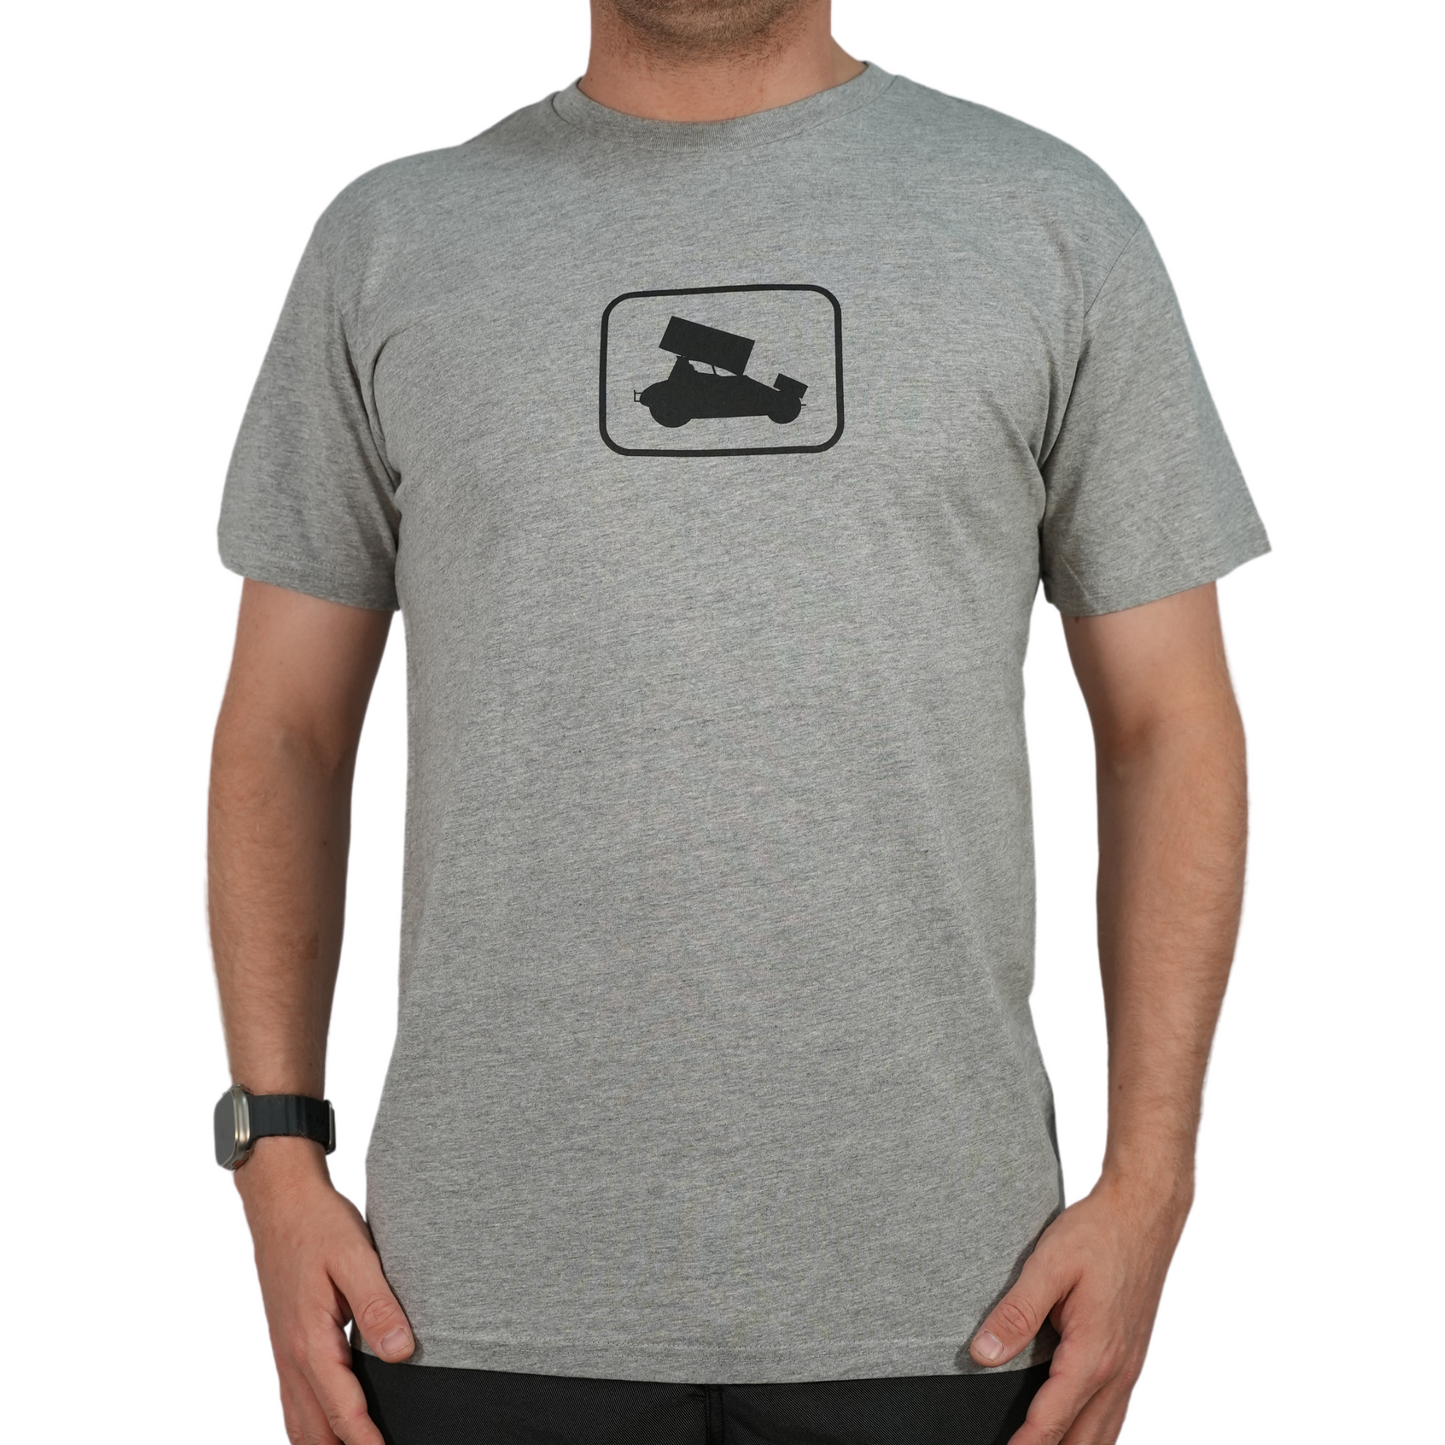 EMBLEM T-shirt - GREY